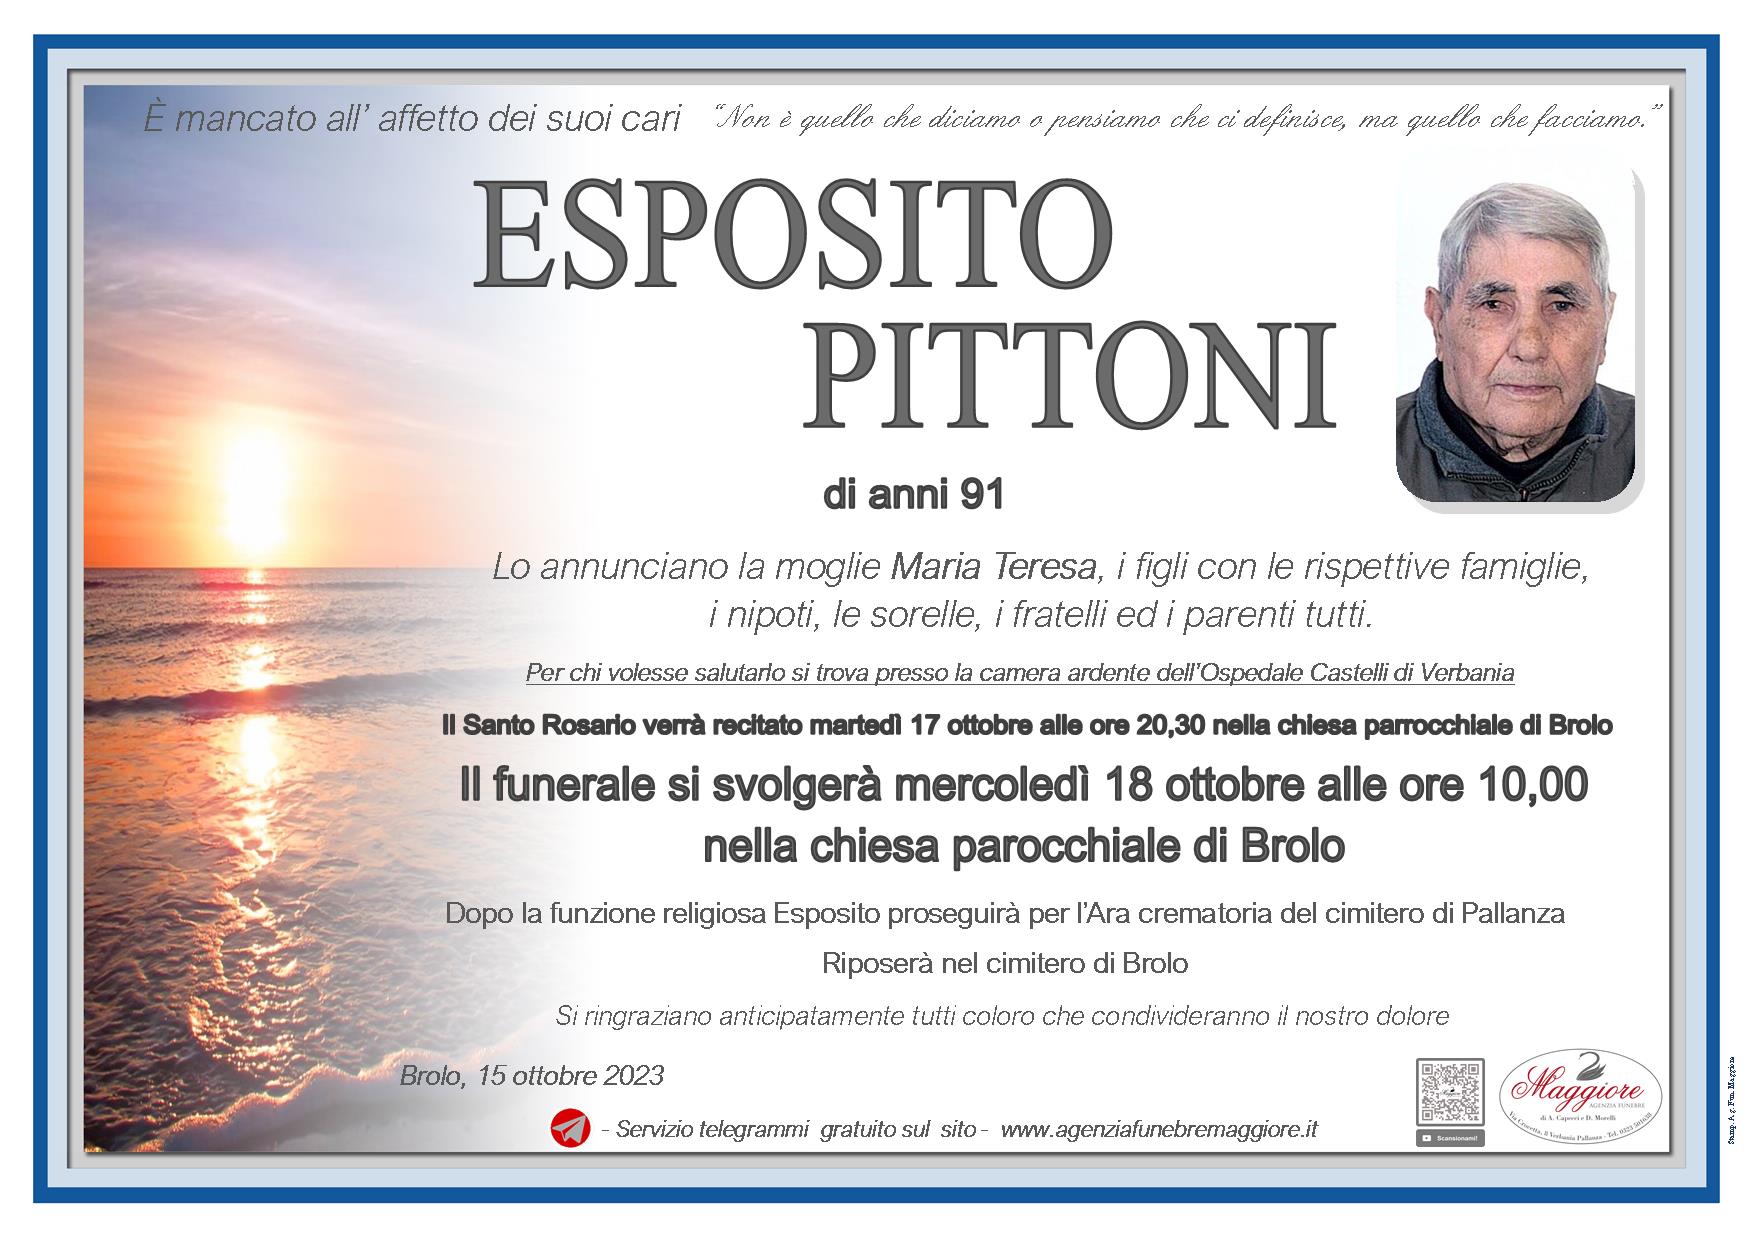 Esposito Pittoni